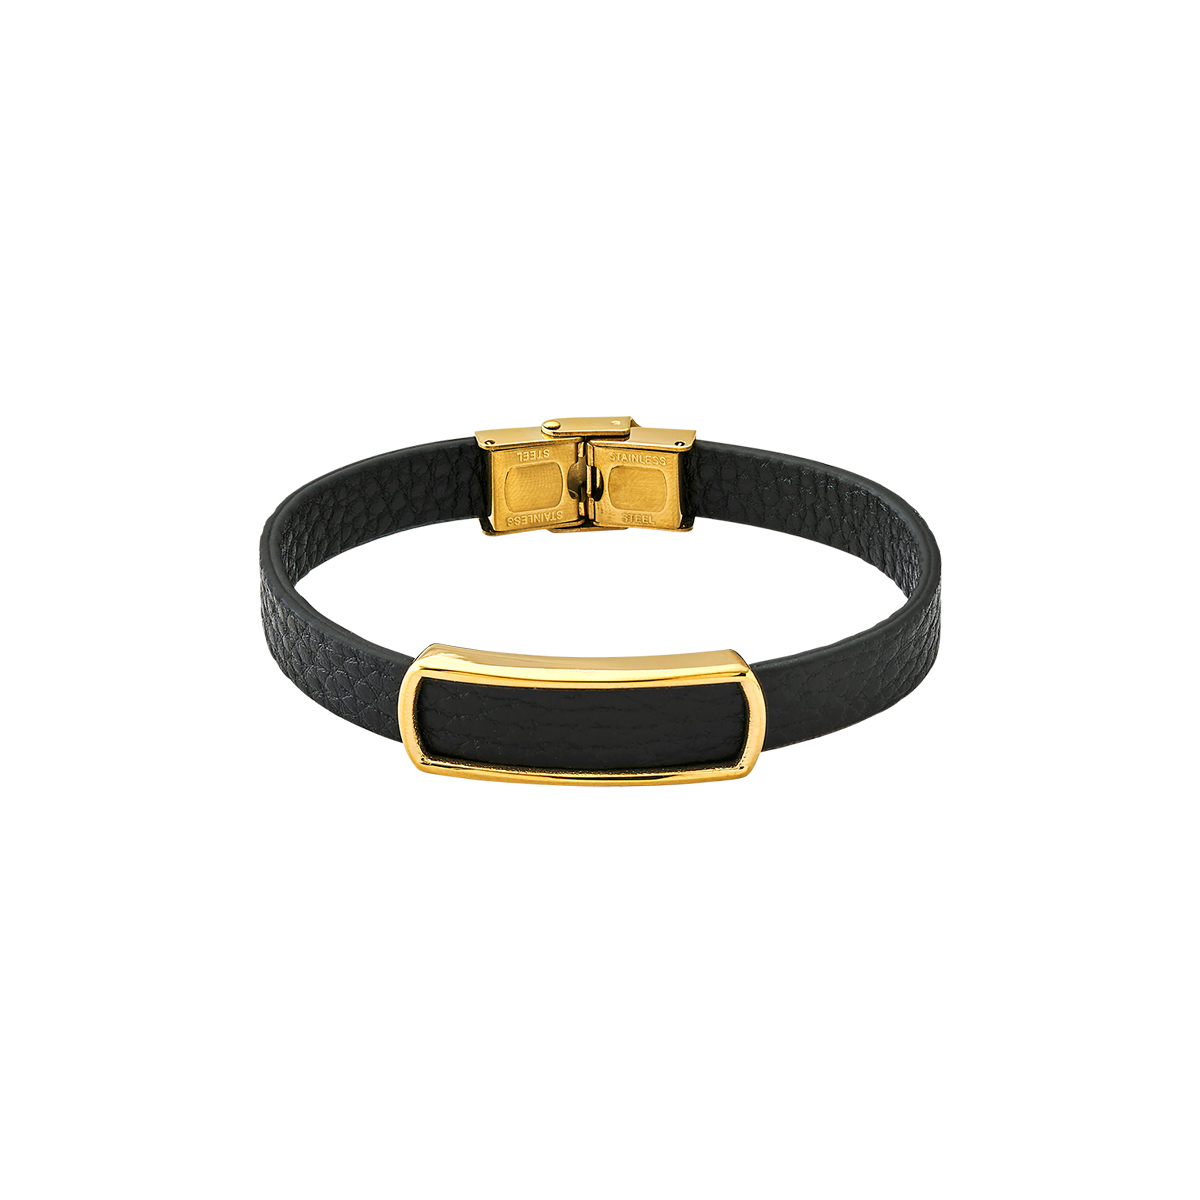 XENOX Armband für Herren - X4301 online kaufen